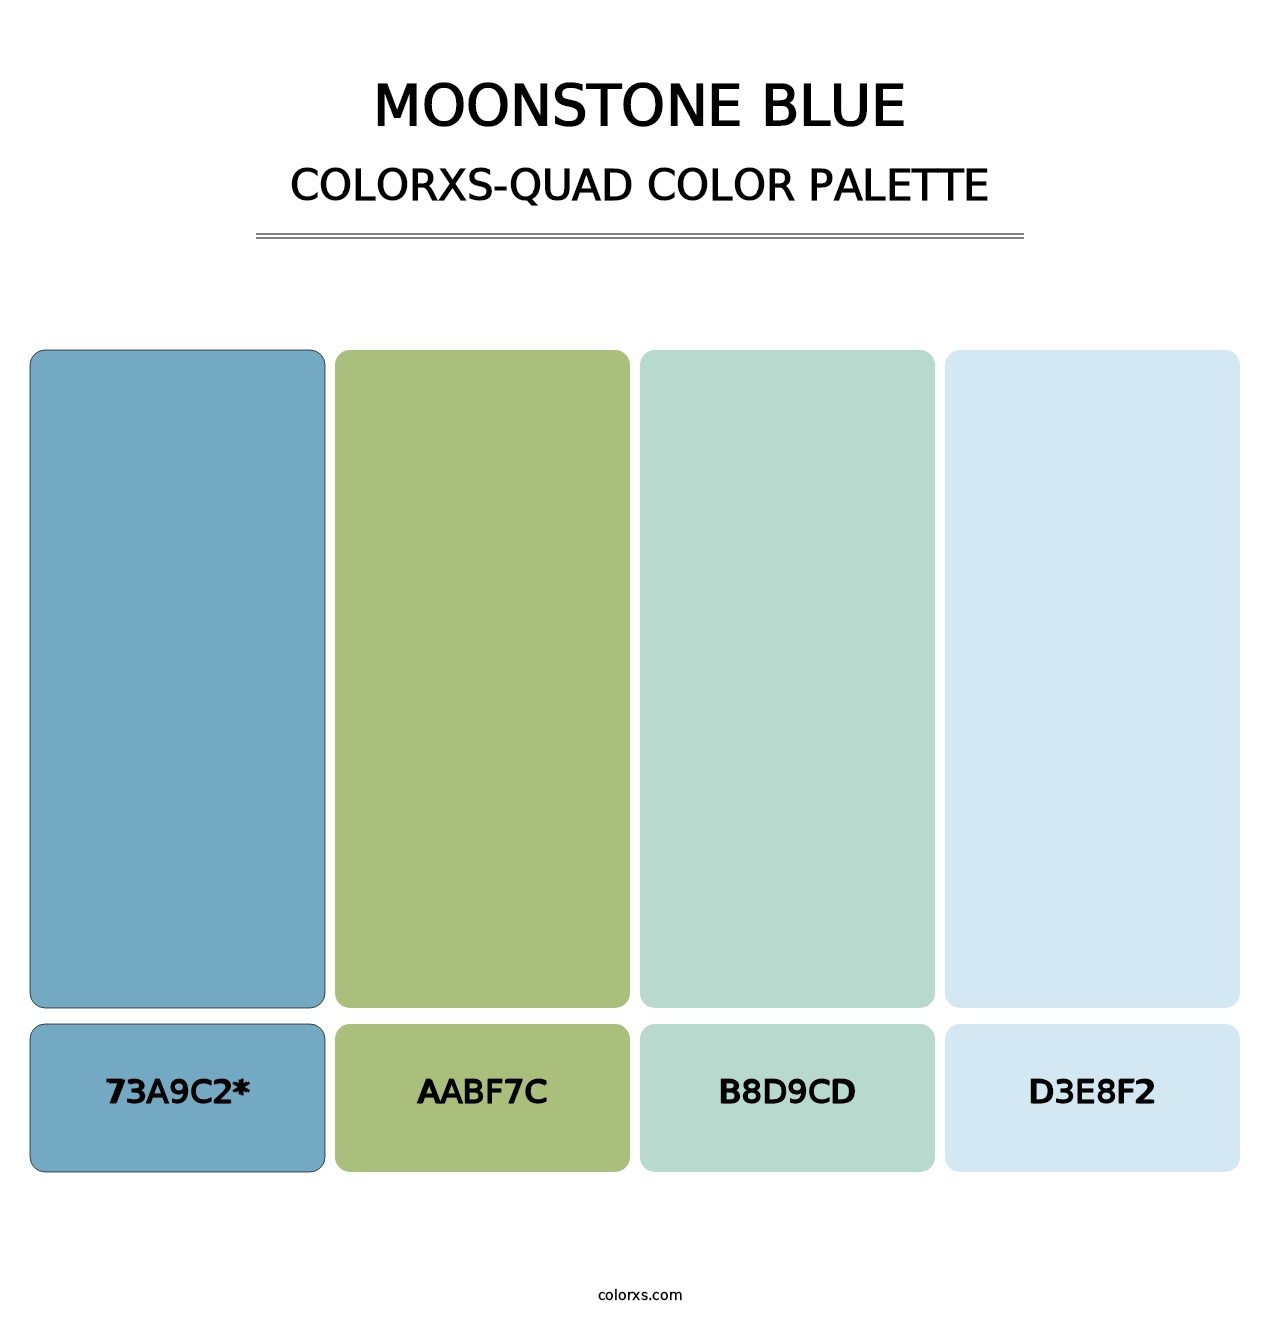 Moonstone Blue - Colorxs Quad Palette